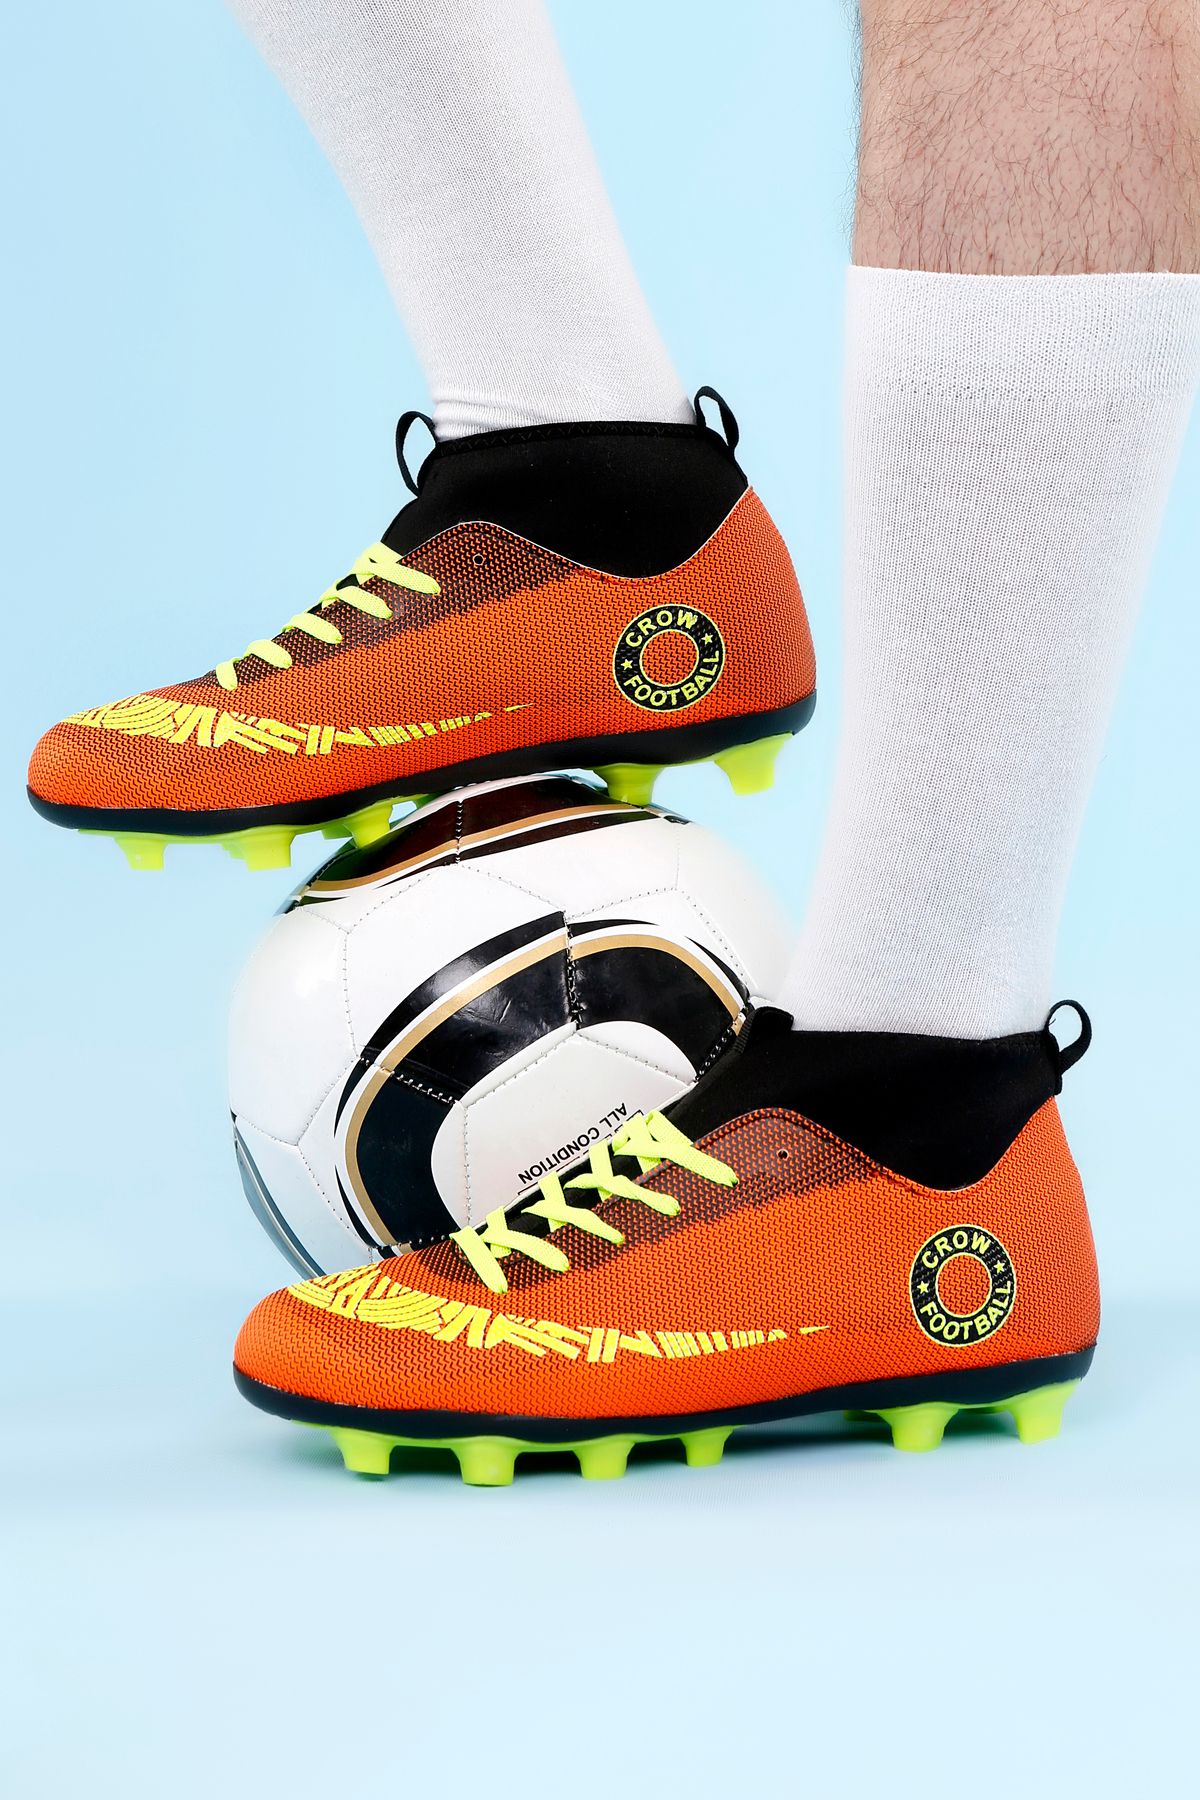 lord's ayakkabı Krampon Bilekli Turuncu-sarı Unisex Futbol Ayakkabısı Garantili Lisanslı